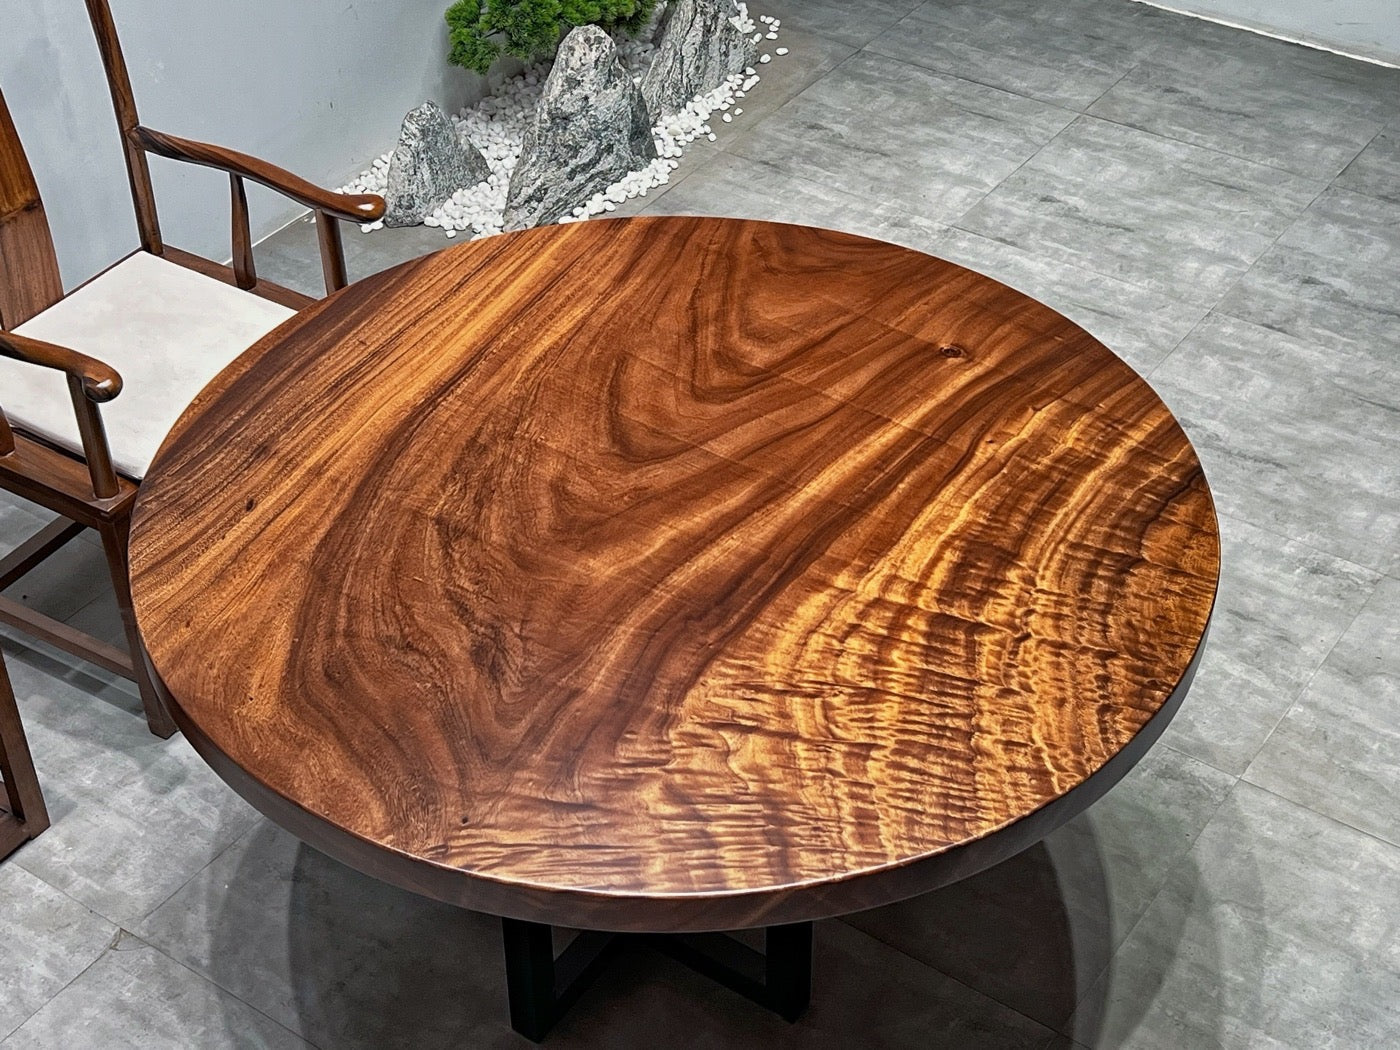 Runder Tisch aus dunklem Holz, runder Tisch aus antikem Holz, runde Tischplatten aus massivem Holz, runder Tisch aus Kirschholz